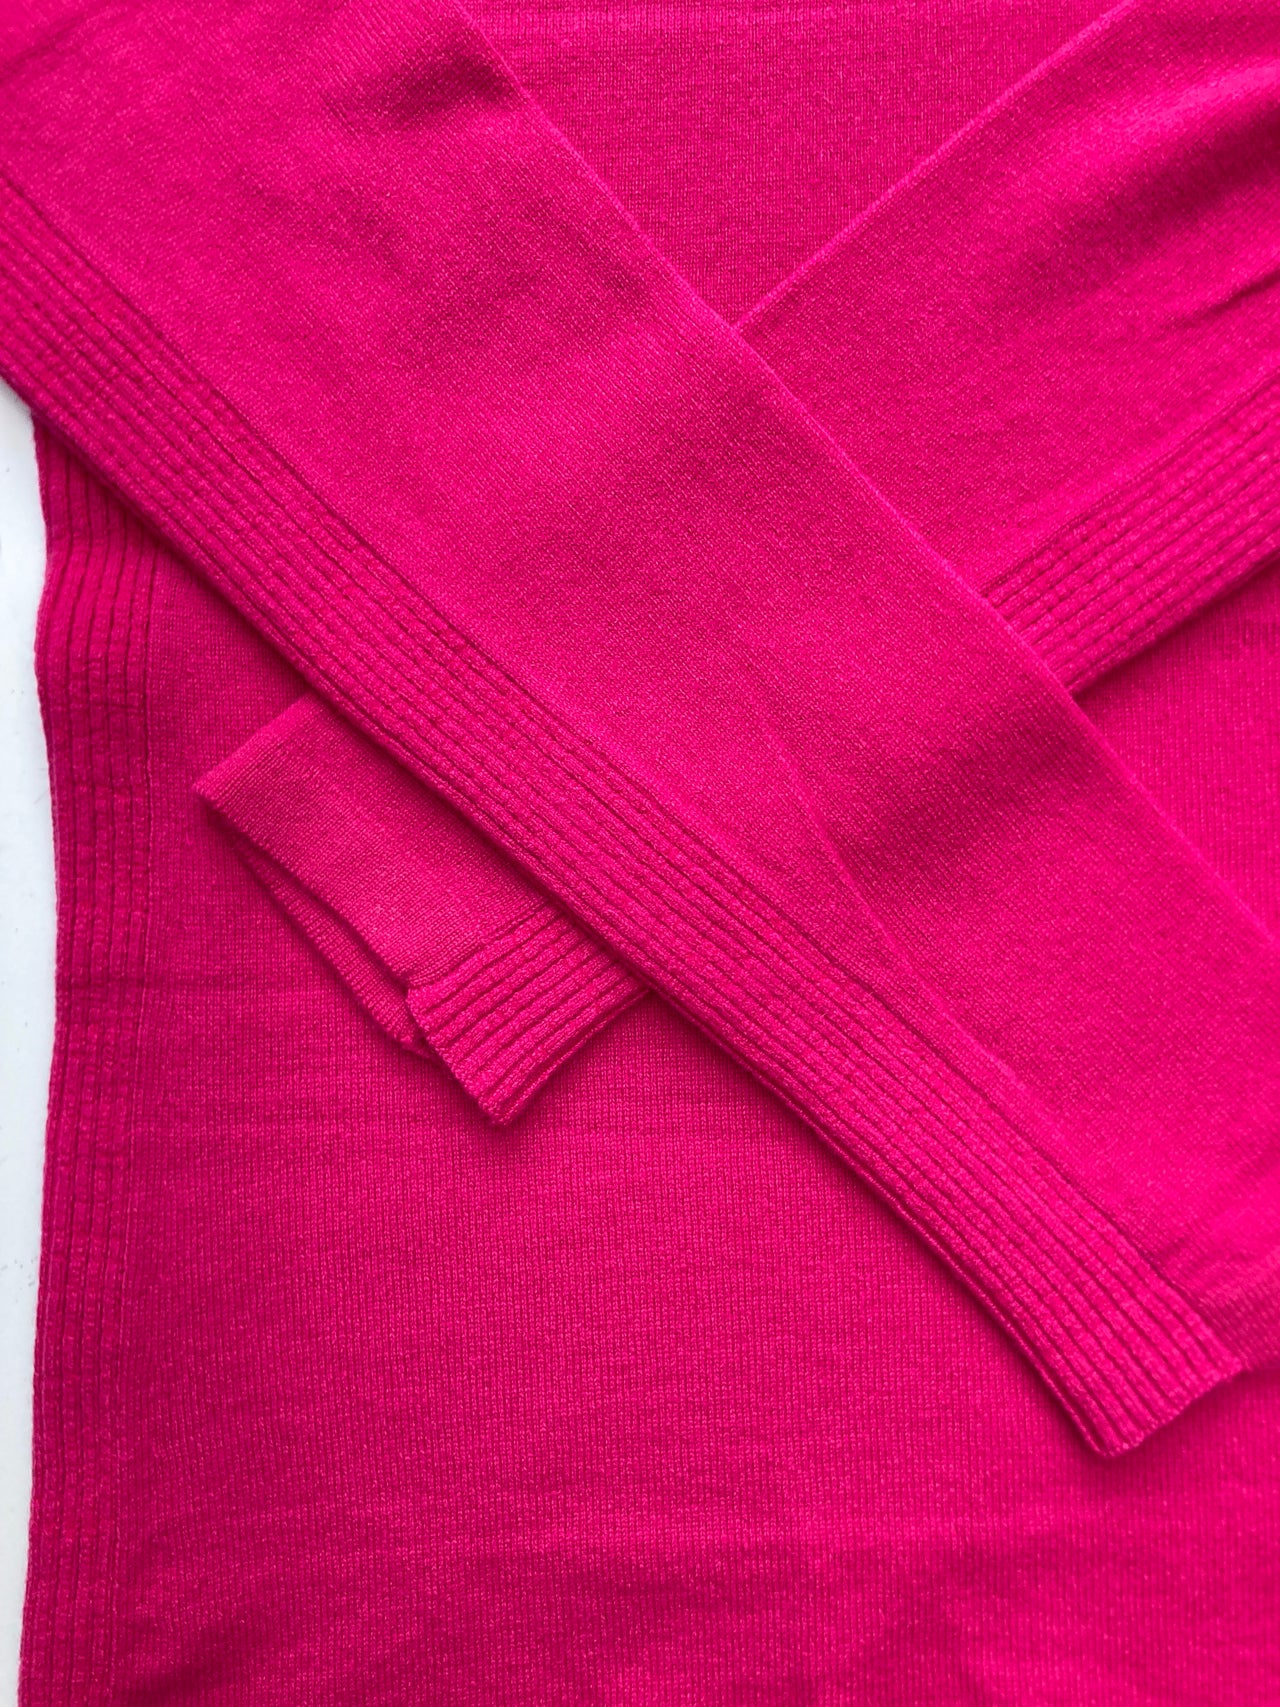 Men's Cashmere Jumper Pink